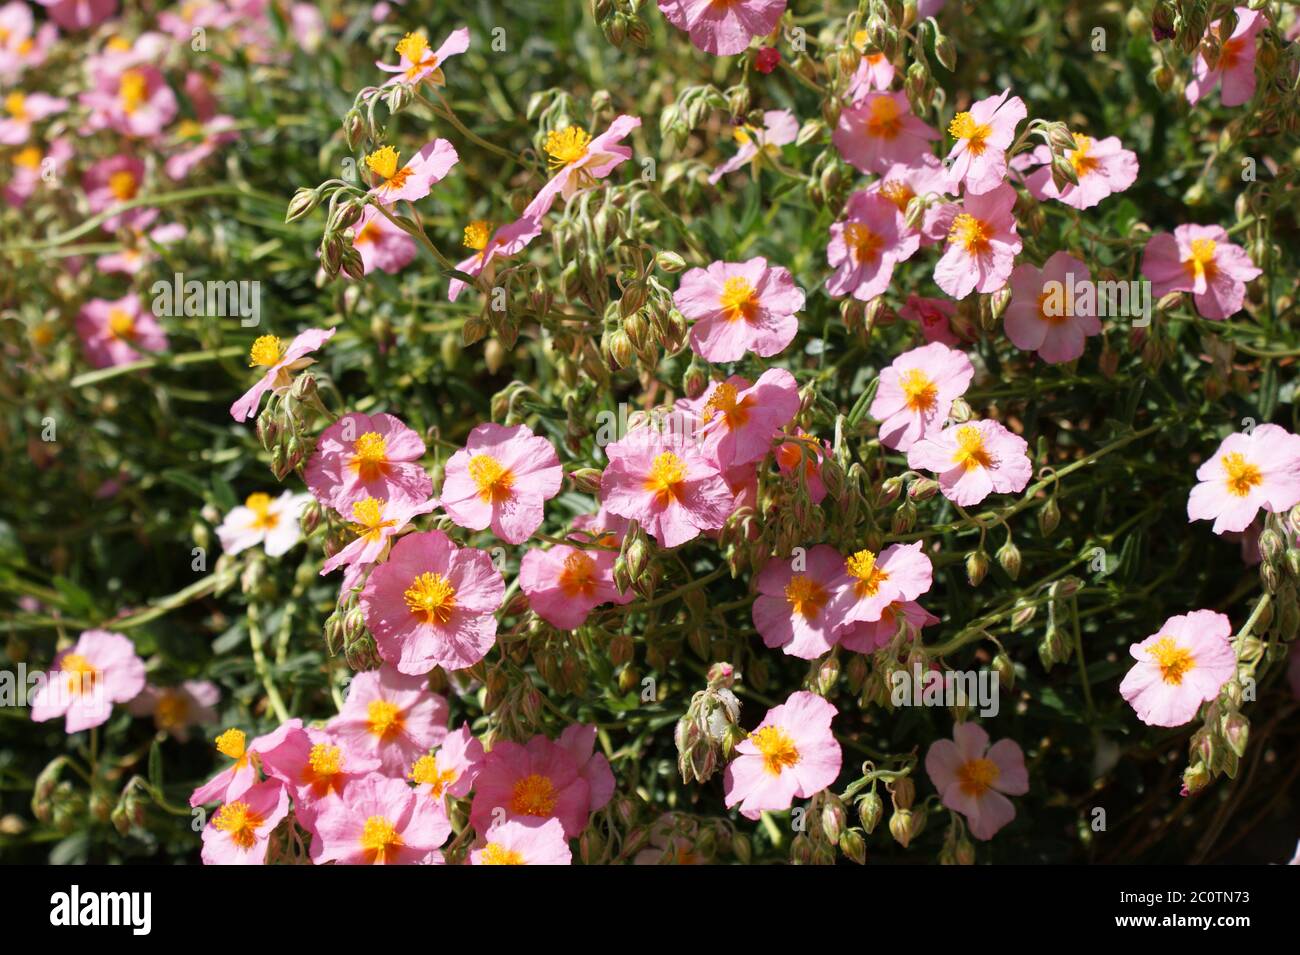 Garden Pink Flower Stock Photo